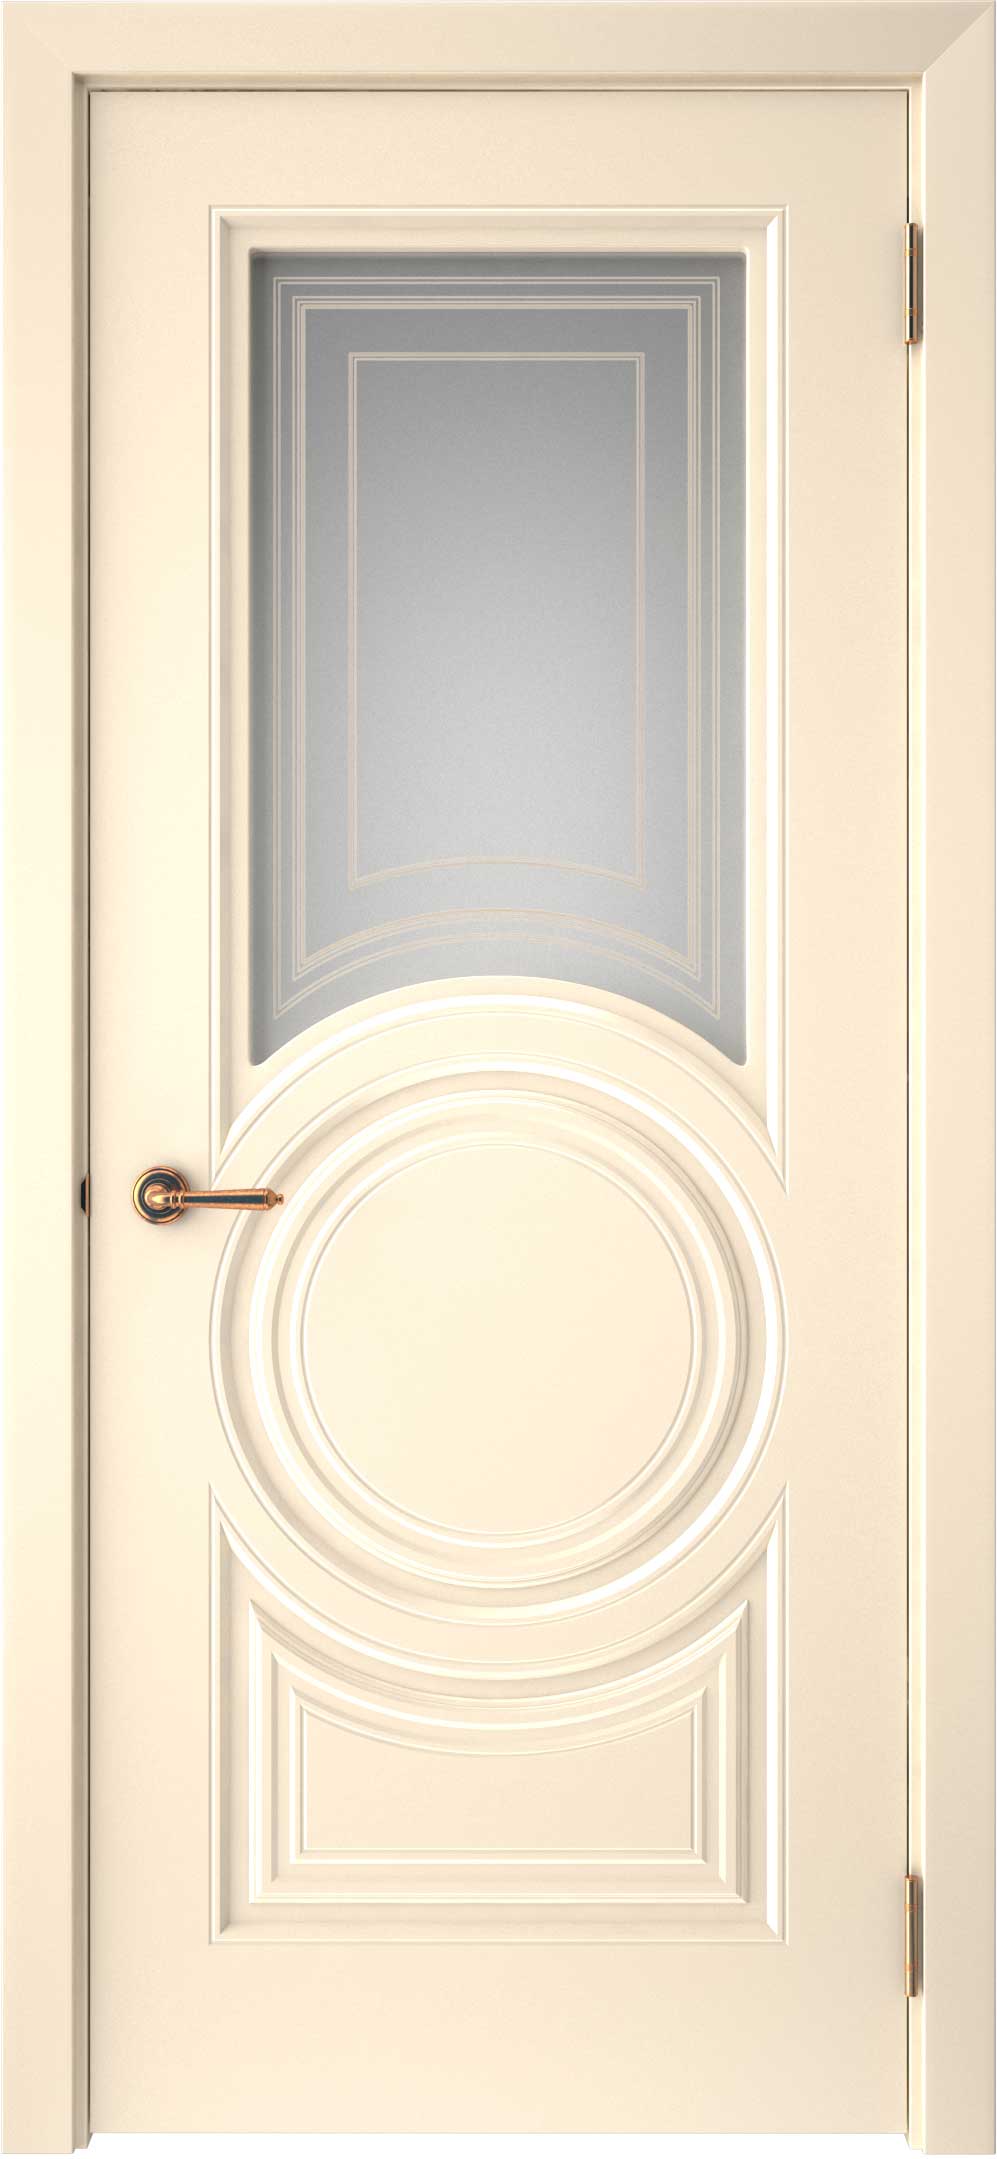 Двери крашеные (Эмаль) ТЕКОНА Смальта-45 со стеклом Ваниль ral размер 200 х 60 см. артикул F0000093320